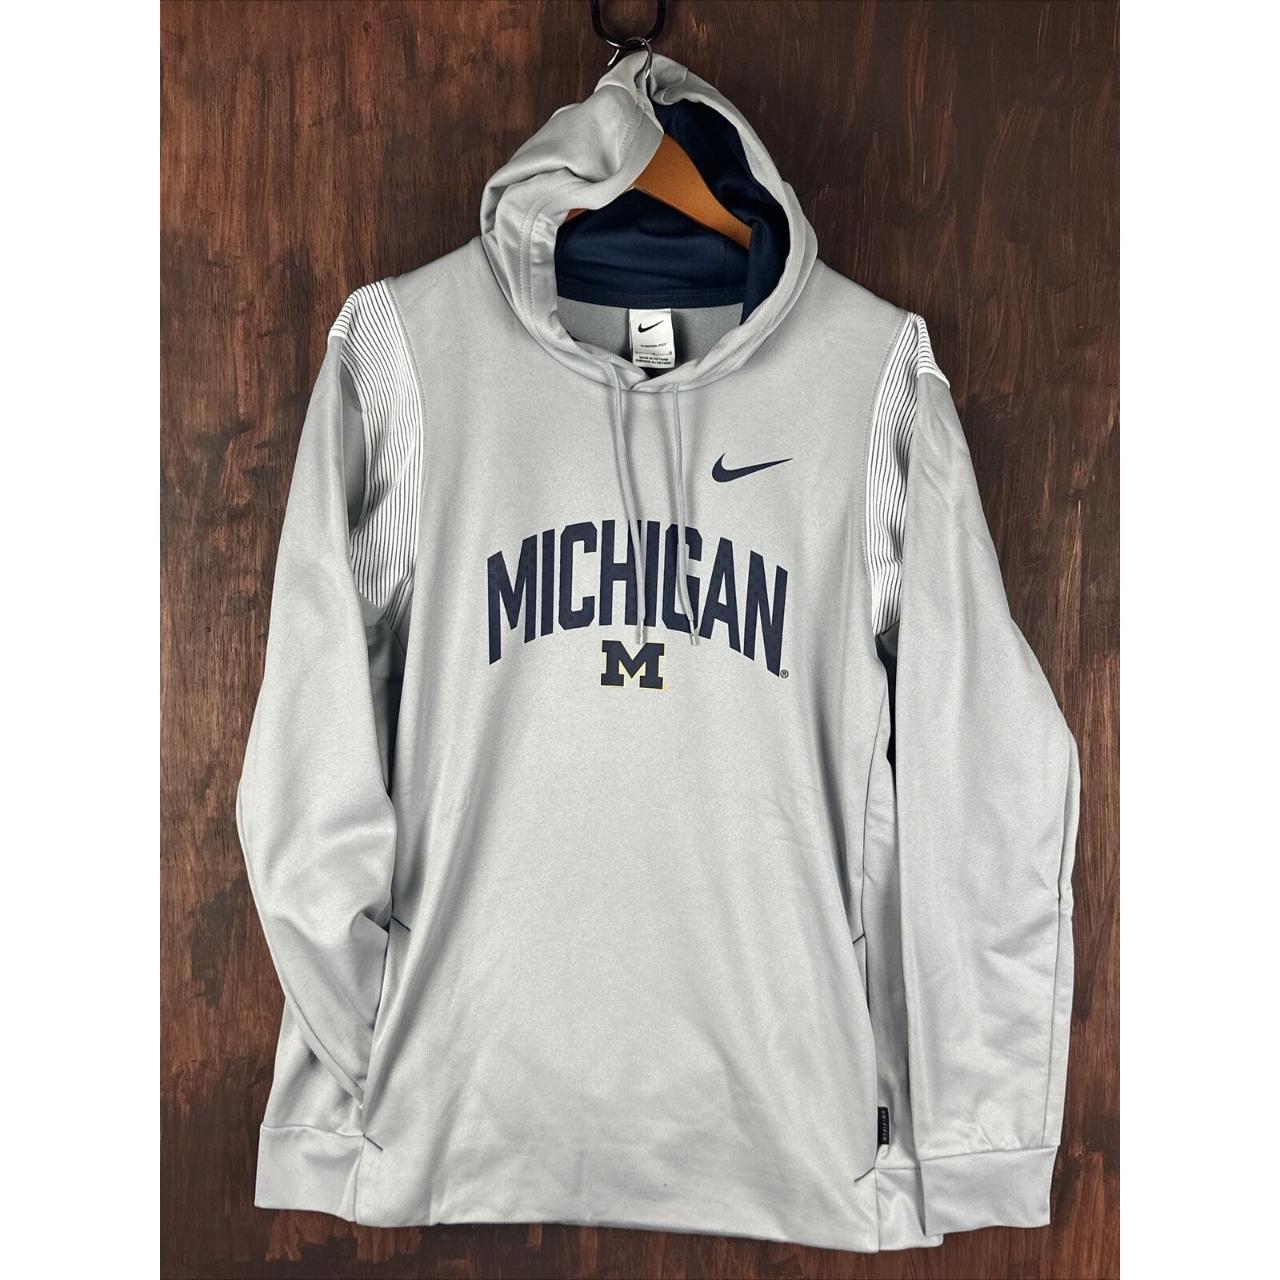 Nike Michigan State visor Adult unisex Color: - Depop